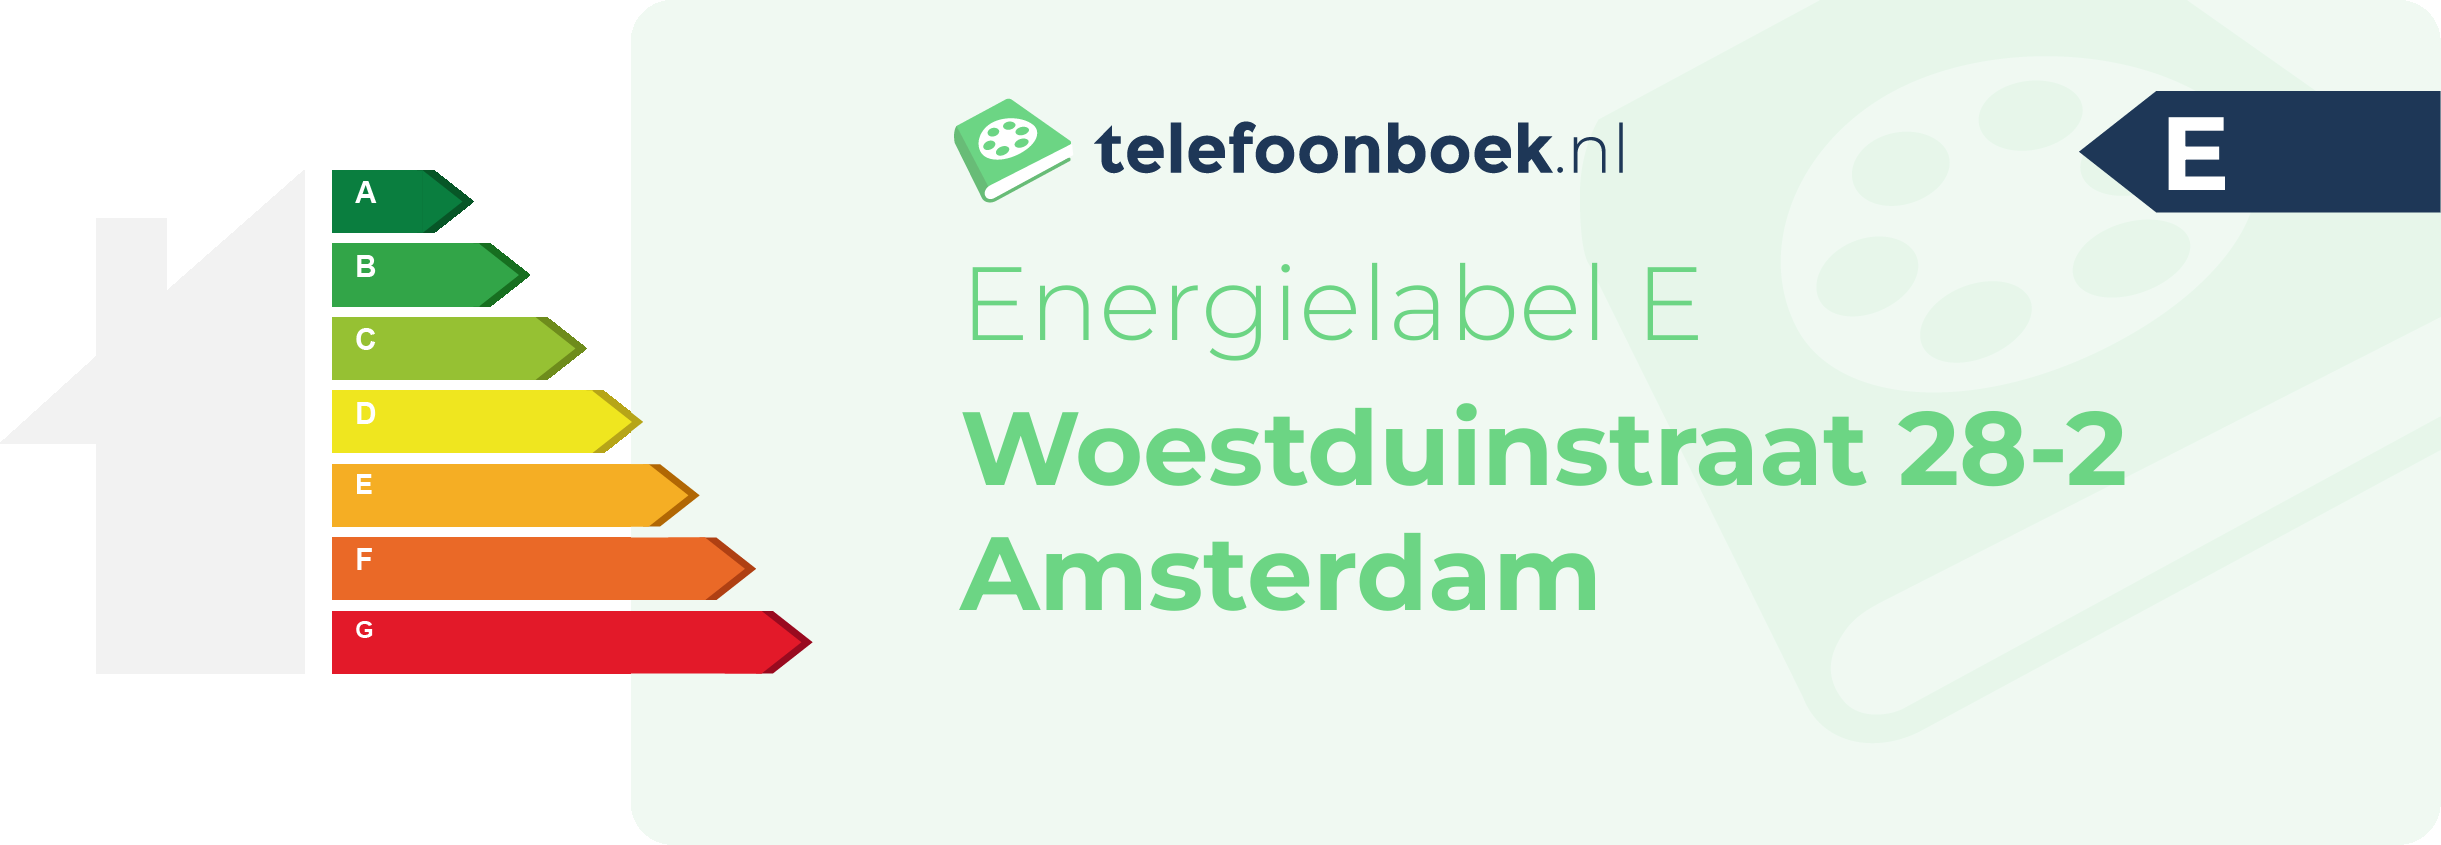 Energielabel Woestduinstraat 28-2 Amsterdam